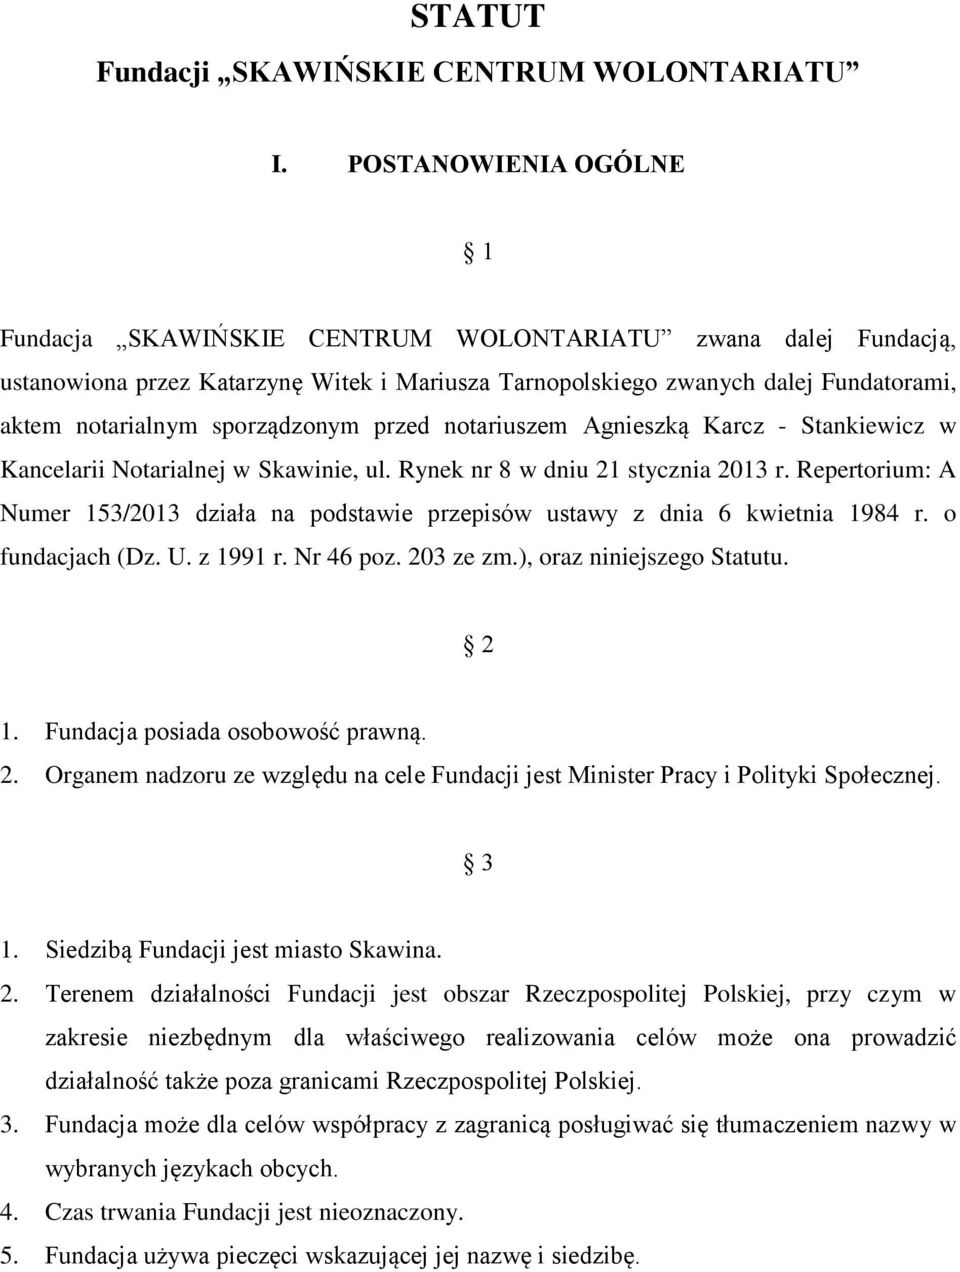 sporządzonym przed notariuszem Agnieszką Karcz - Stankiewicz w Kancelarii Notarialnej w Skawinie, ul. Rynek nr 8 w dniu 21 stycznia 2013 r.